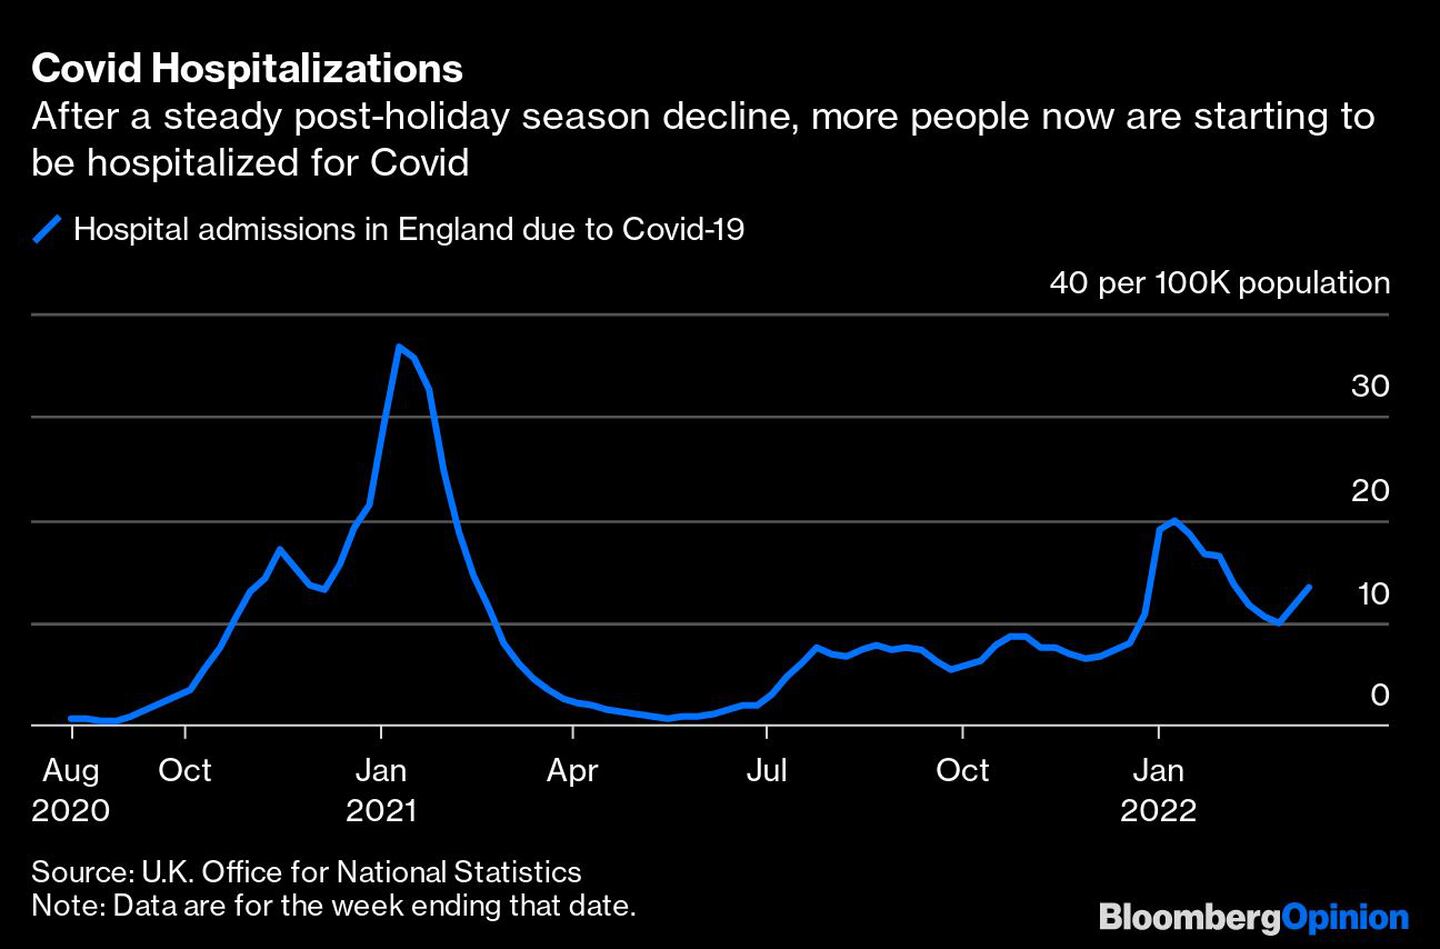 Tras el descenso constante después de la temporada vacacional, ahora empiezan a hospitalizarse más personas por Covid-19dfd